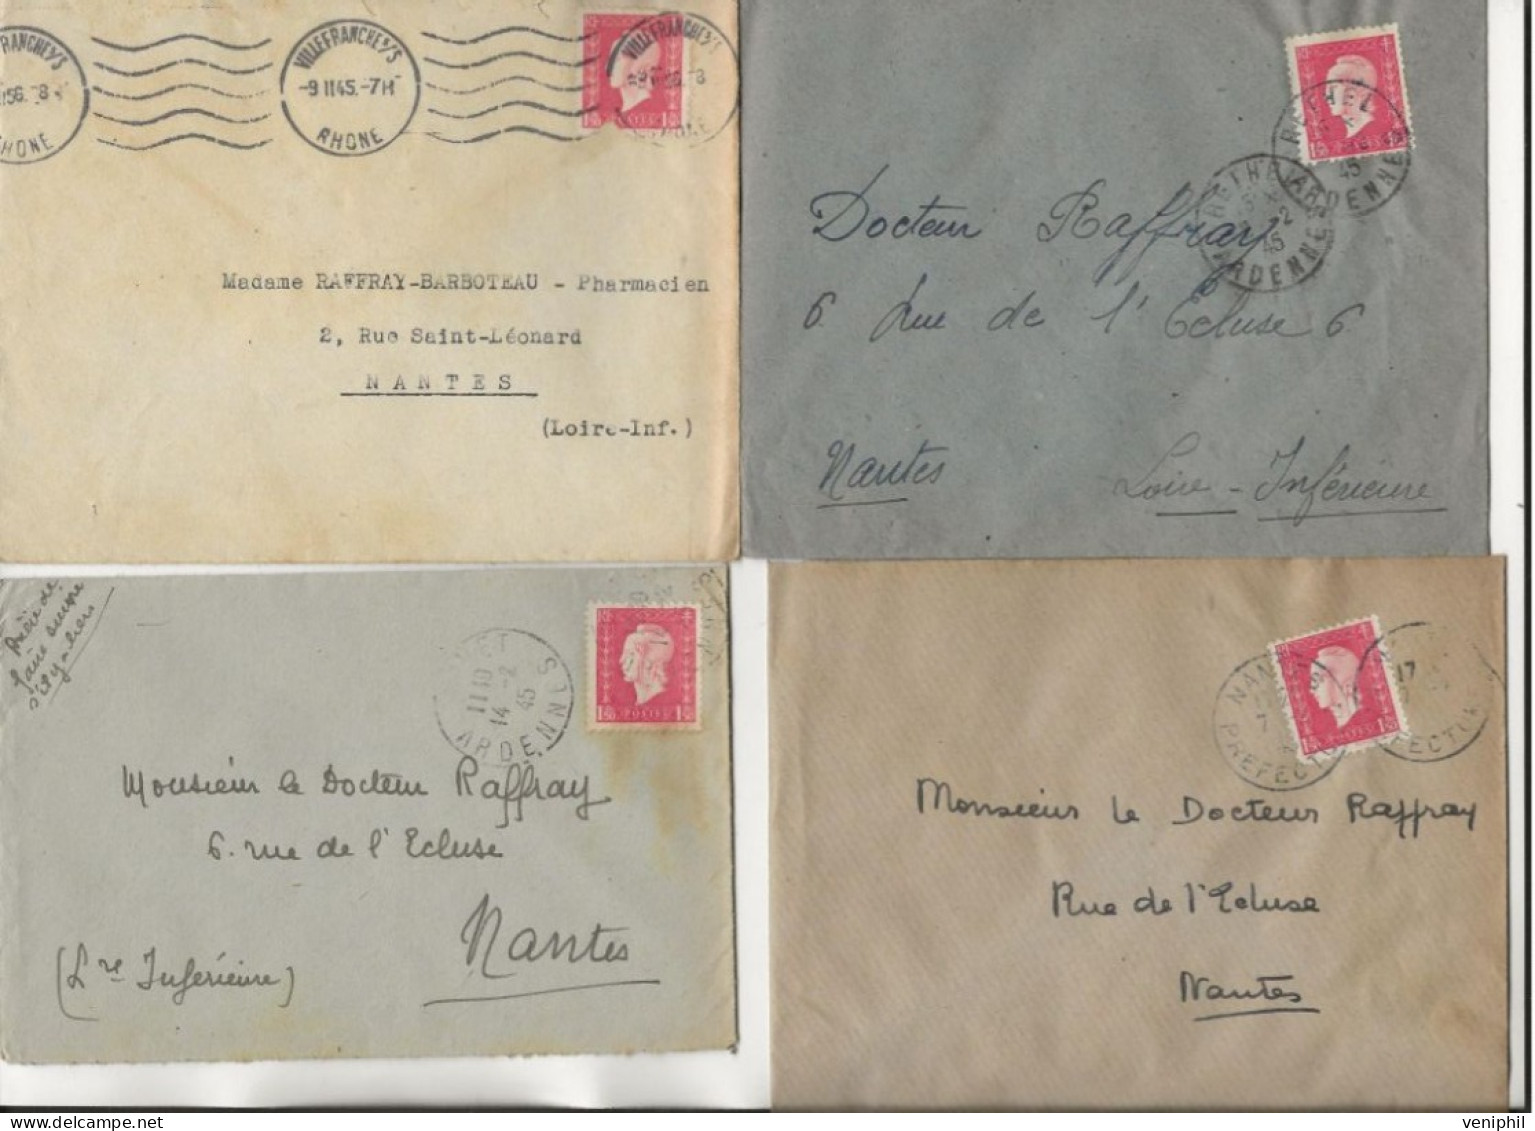 LOT DE 24 LETTRES AFFRANCHIES  TYPE MERCURE N° 682- 685-687-688--684 - LETTRES PUB + CACHETS DIVERS -1945 -COTE + De 90€ - Mechanical Postmarks (Other)